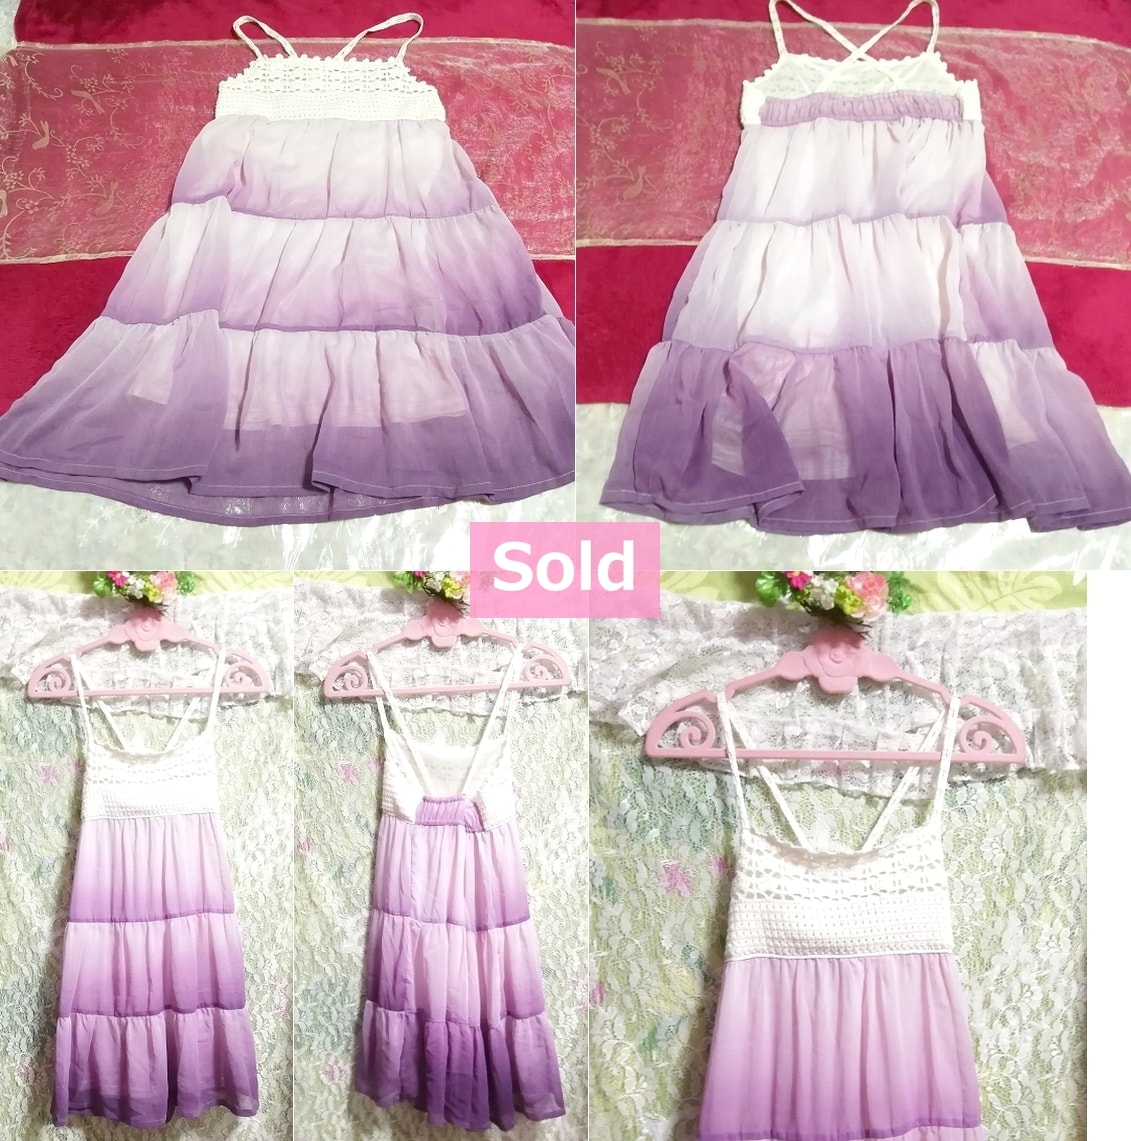 白ニット紫グラデーションスカートキャミソールワンピース White knit purple gradient skirt camisole onepiece